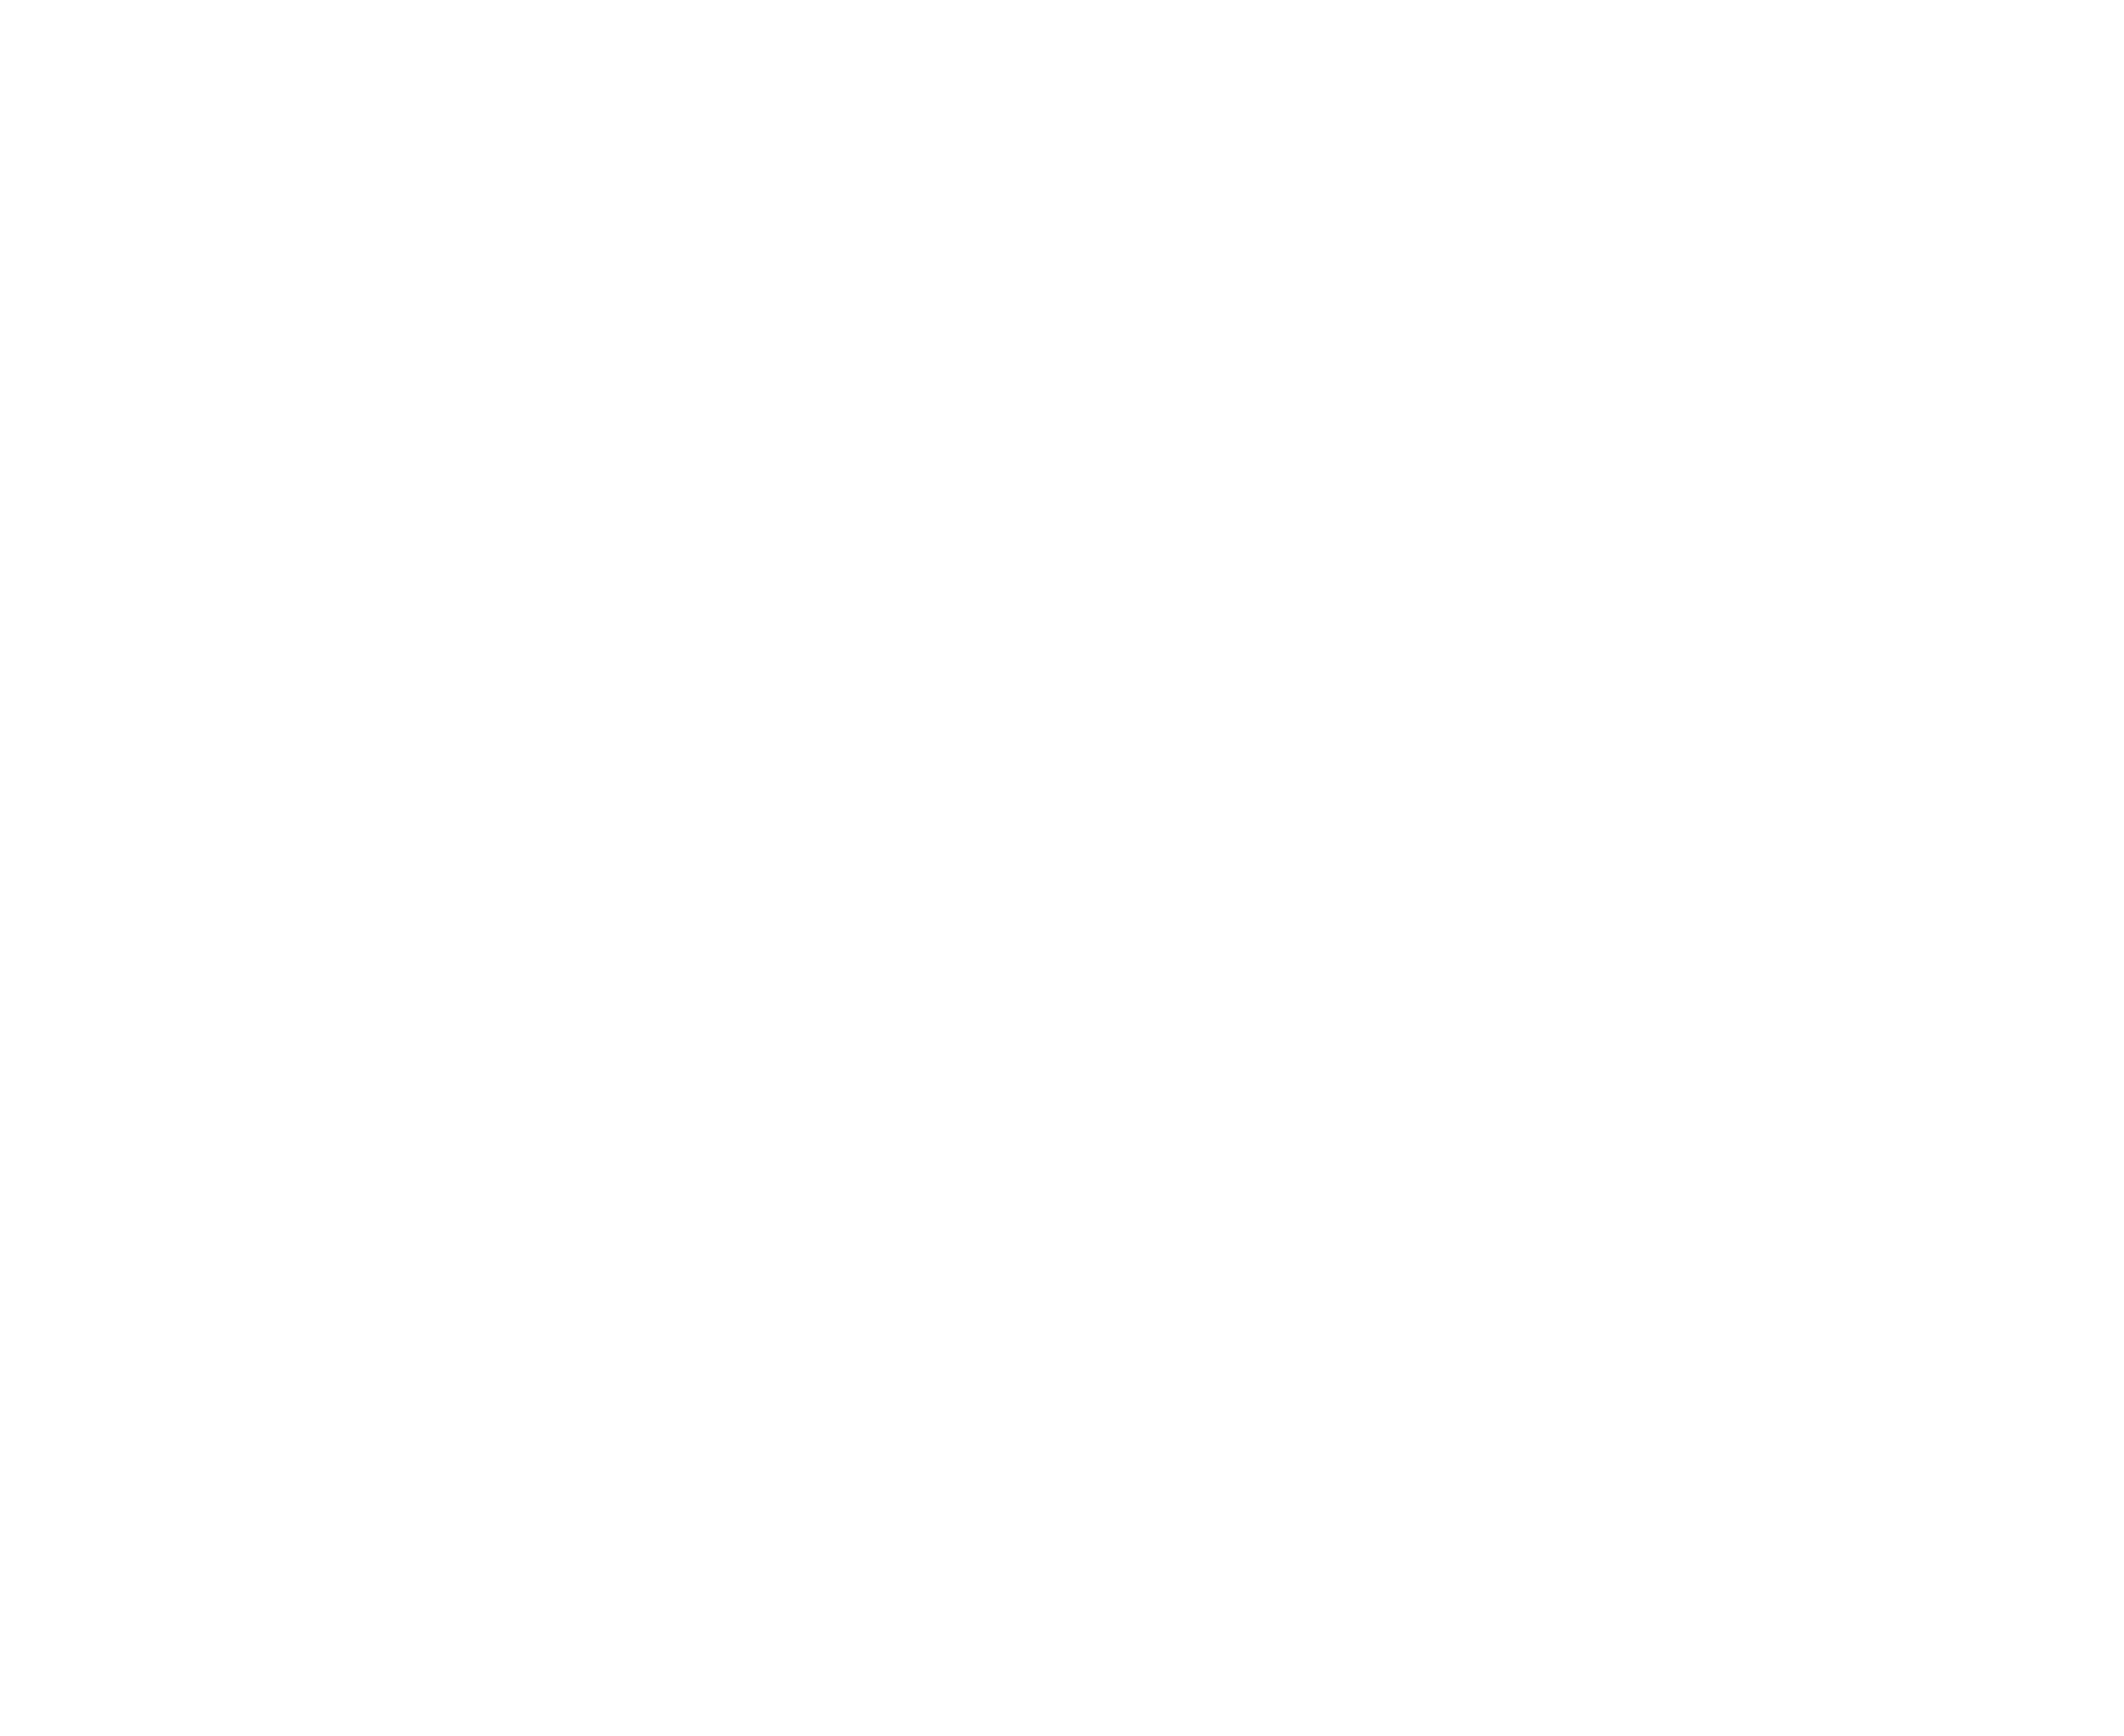 Heinrichs Messtechnik GmbH